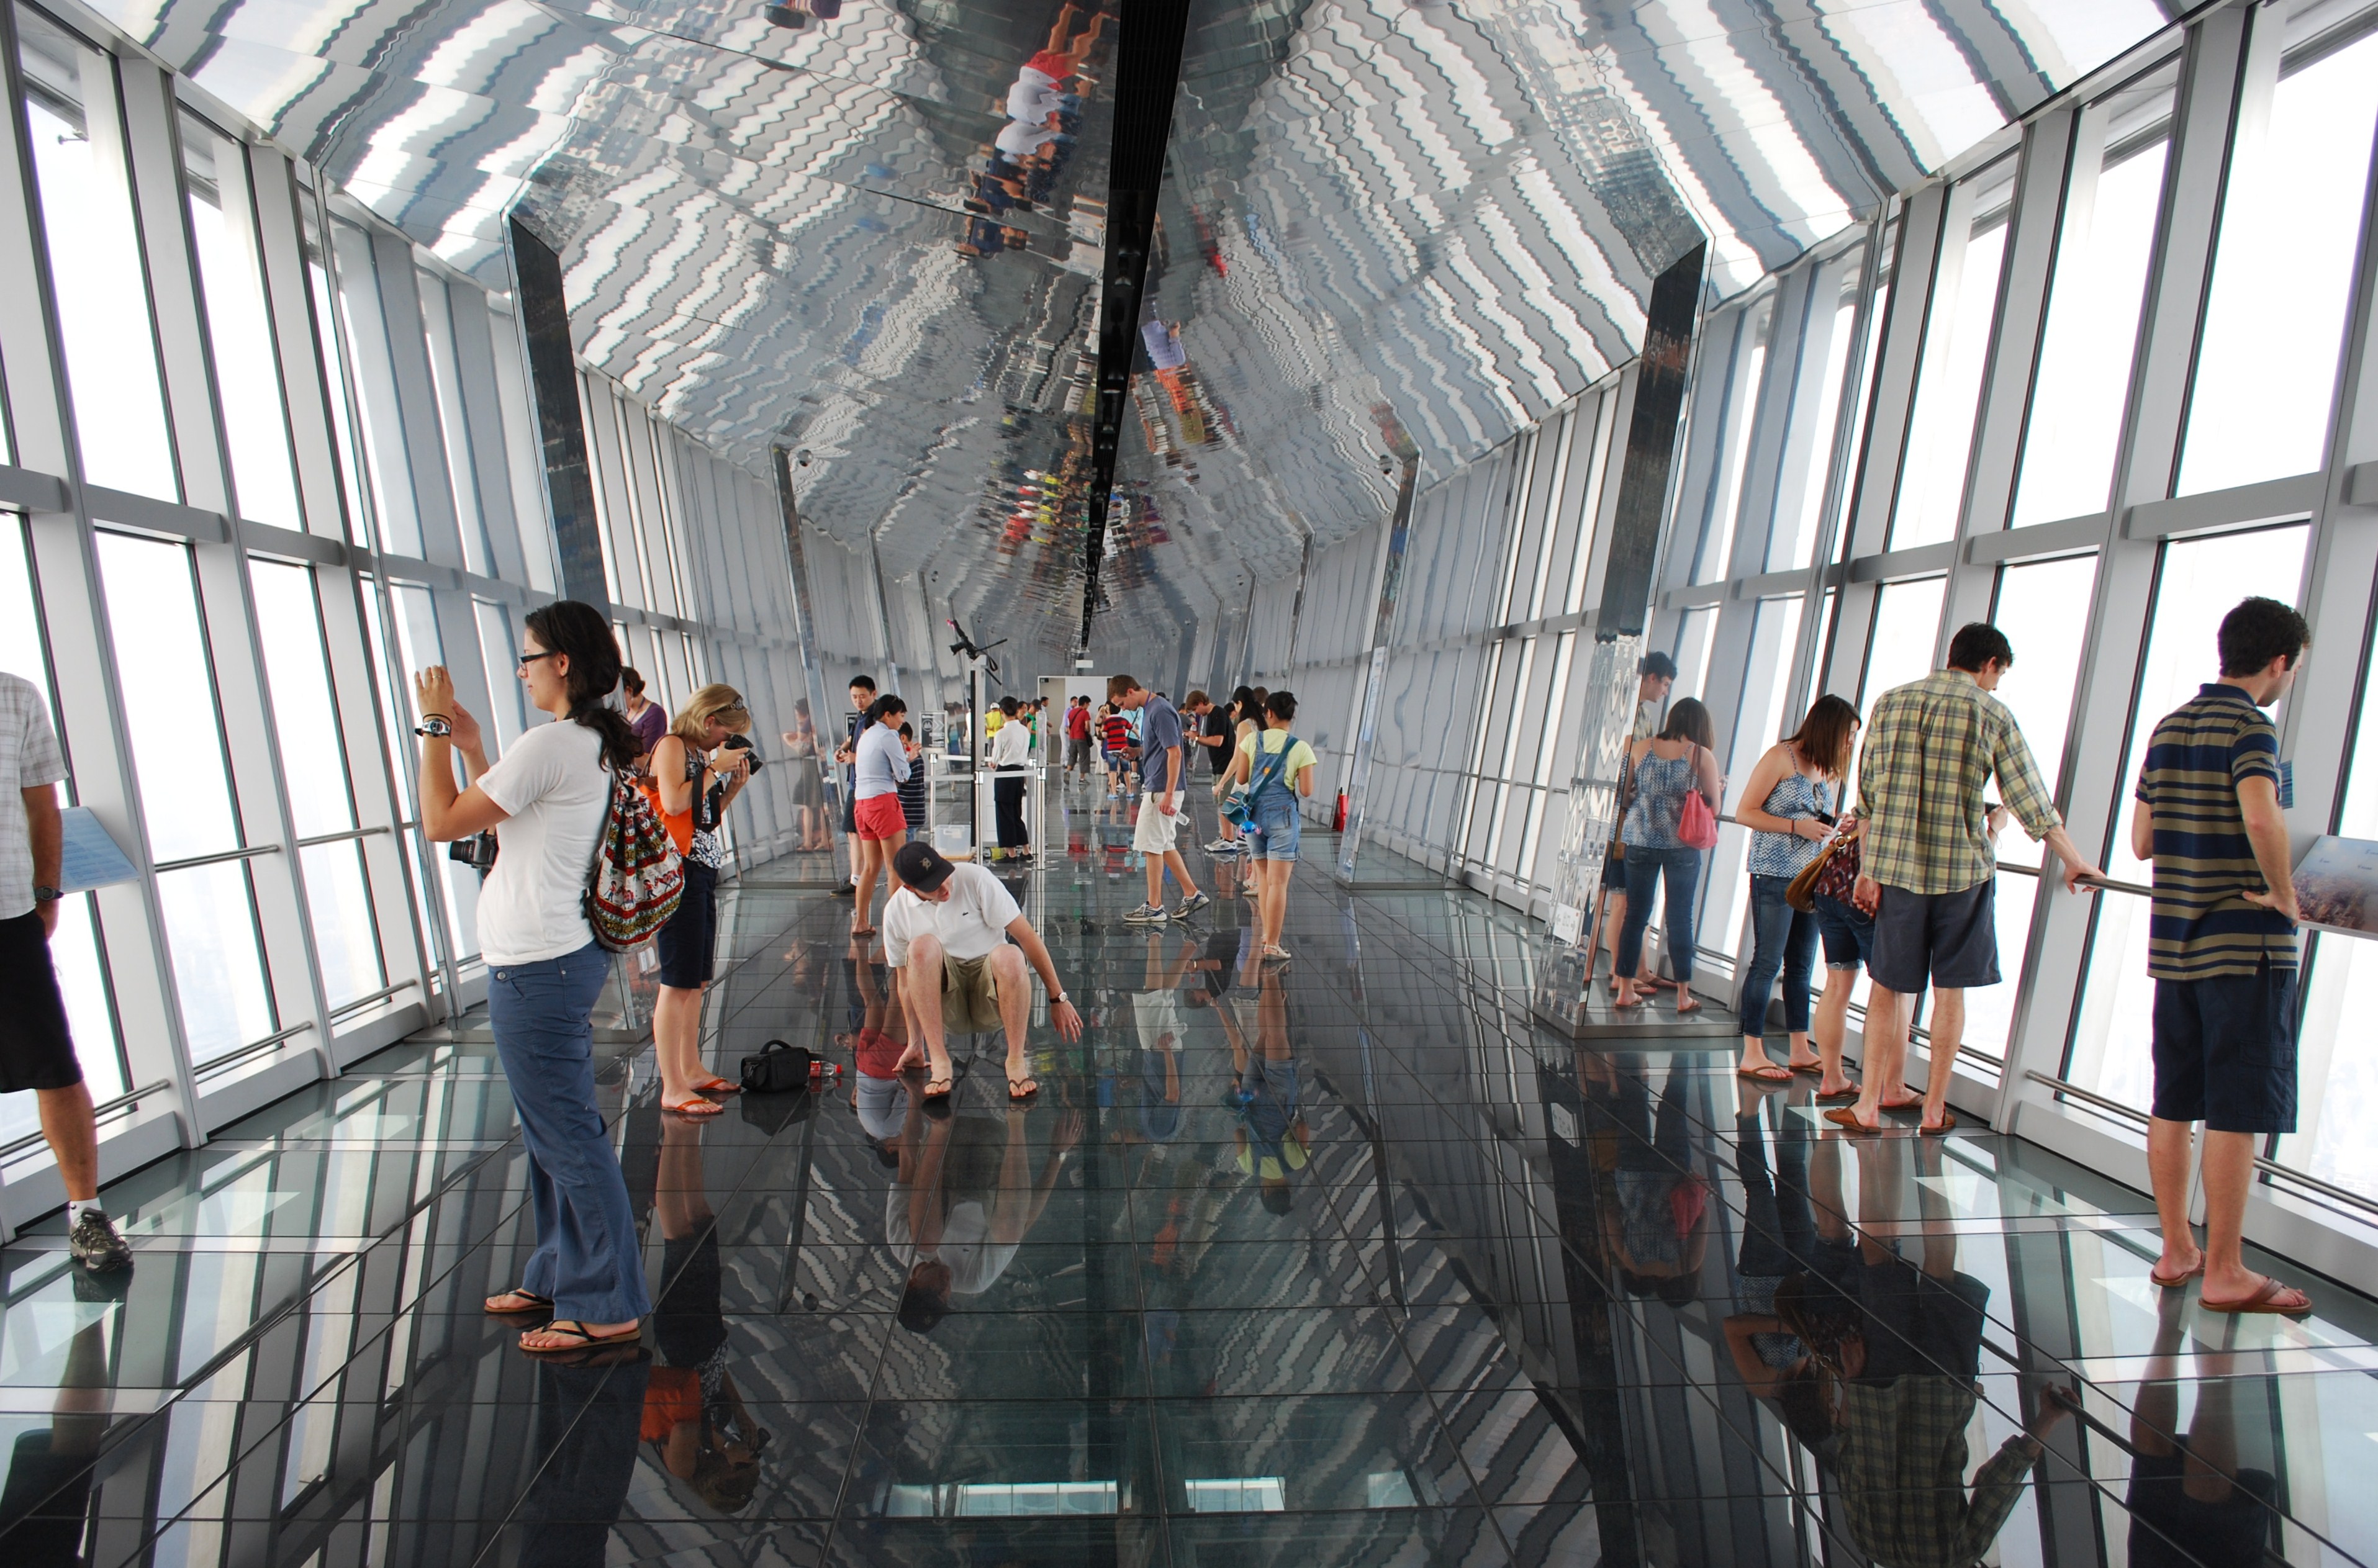 Resultado de imagem para shanghai financial center observation deck